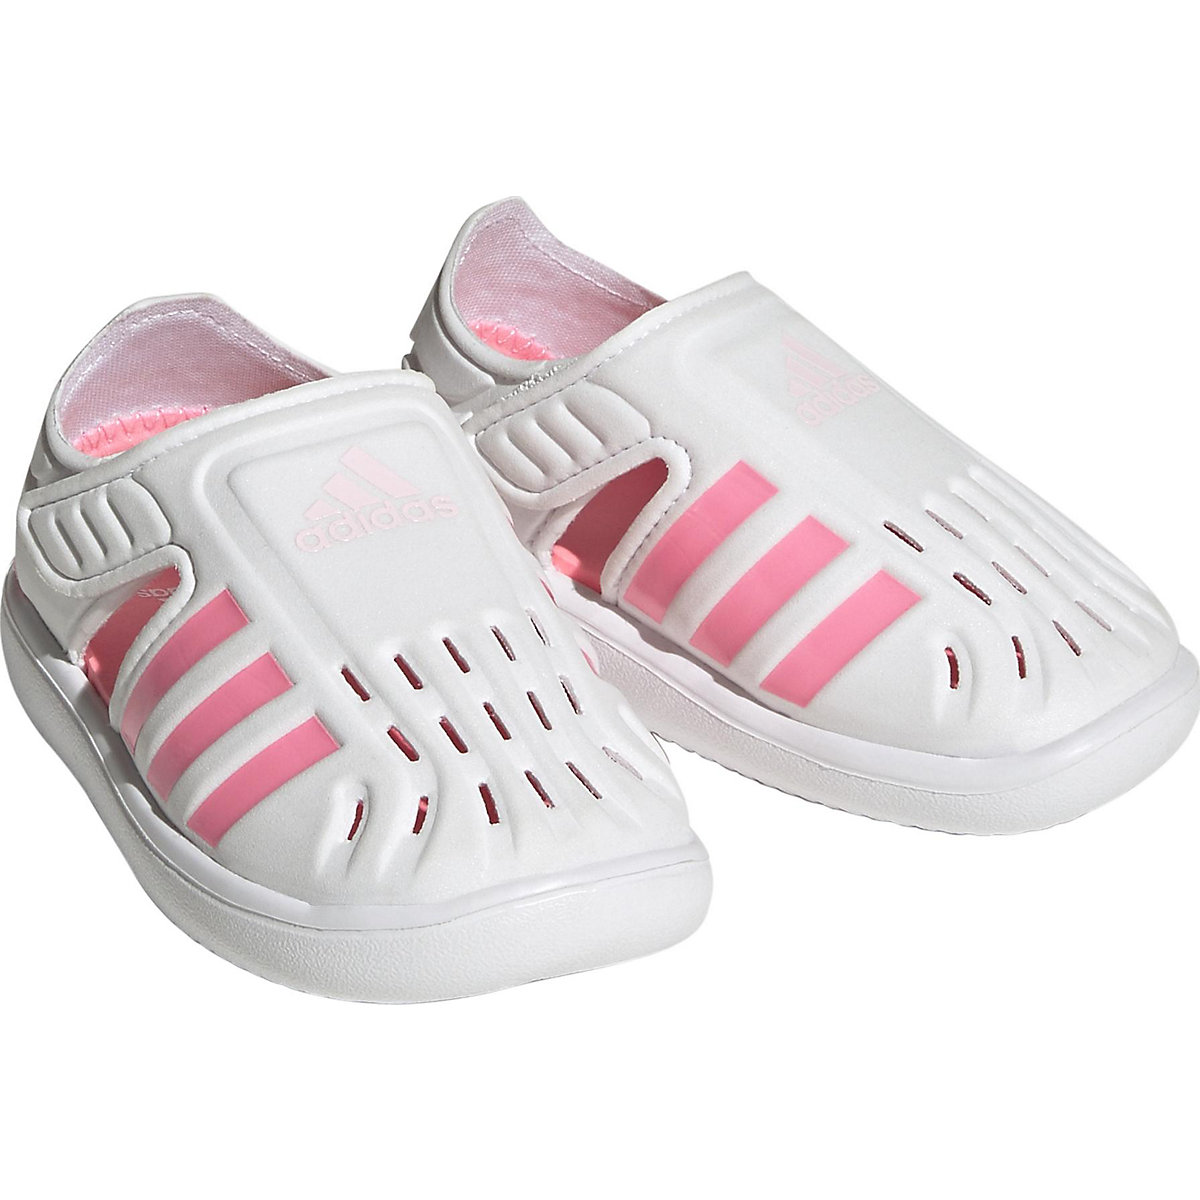 adidas Baby Badeschuhe WATER SANDAL I für Mädchen pink/weiß